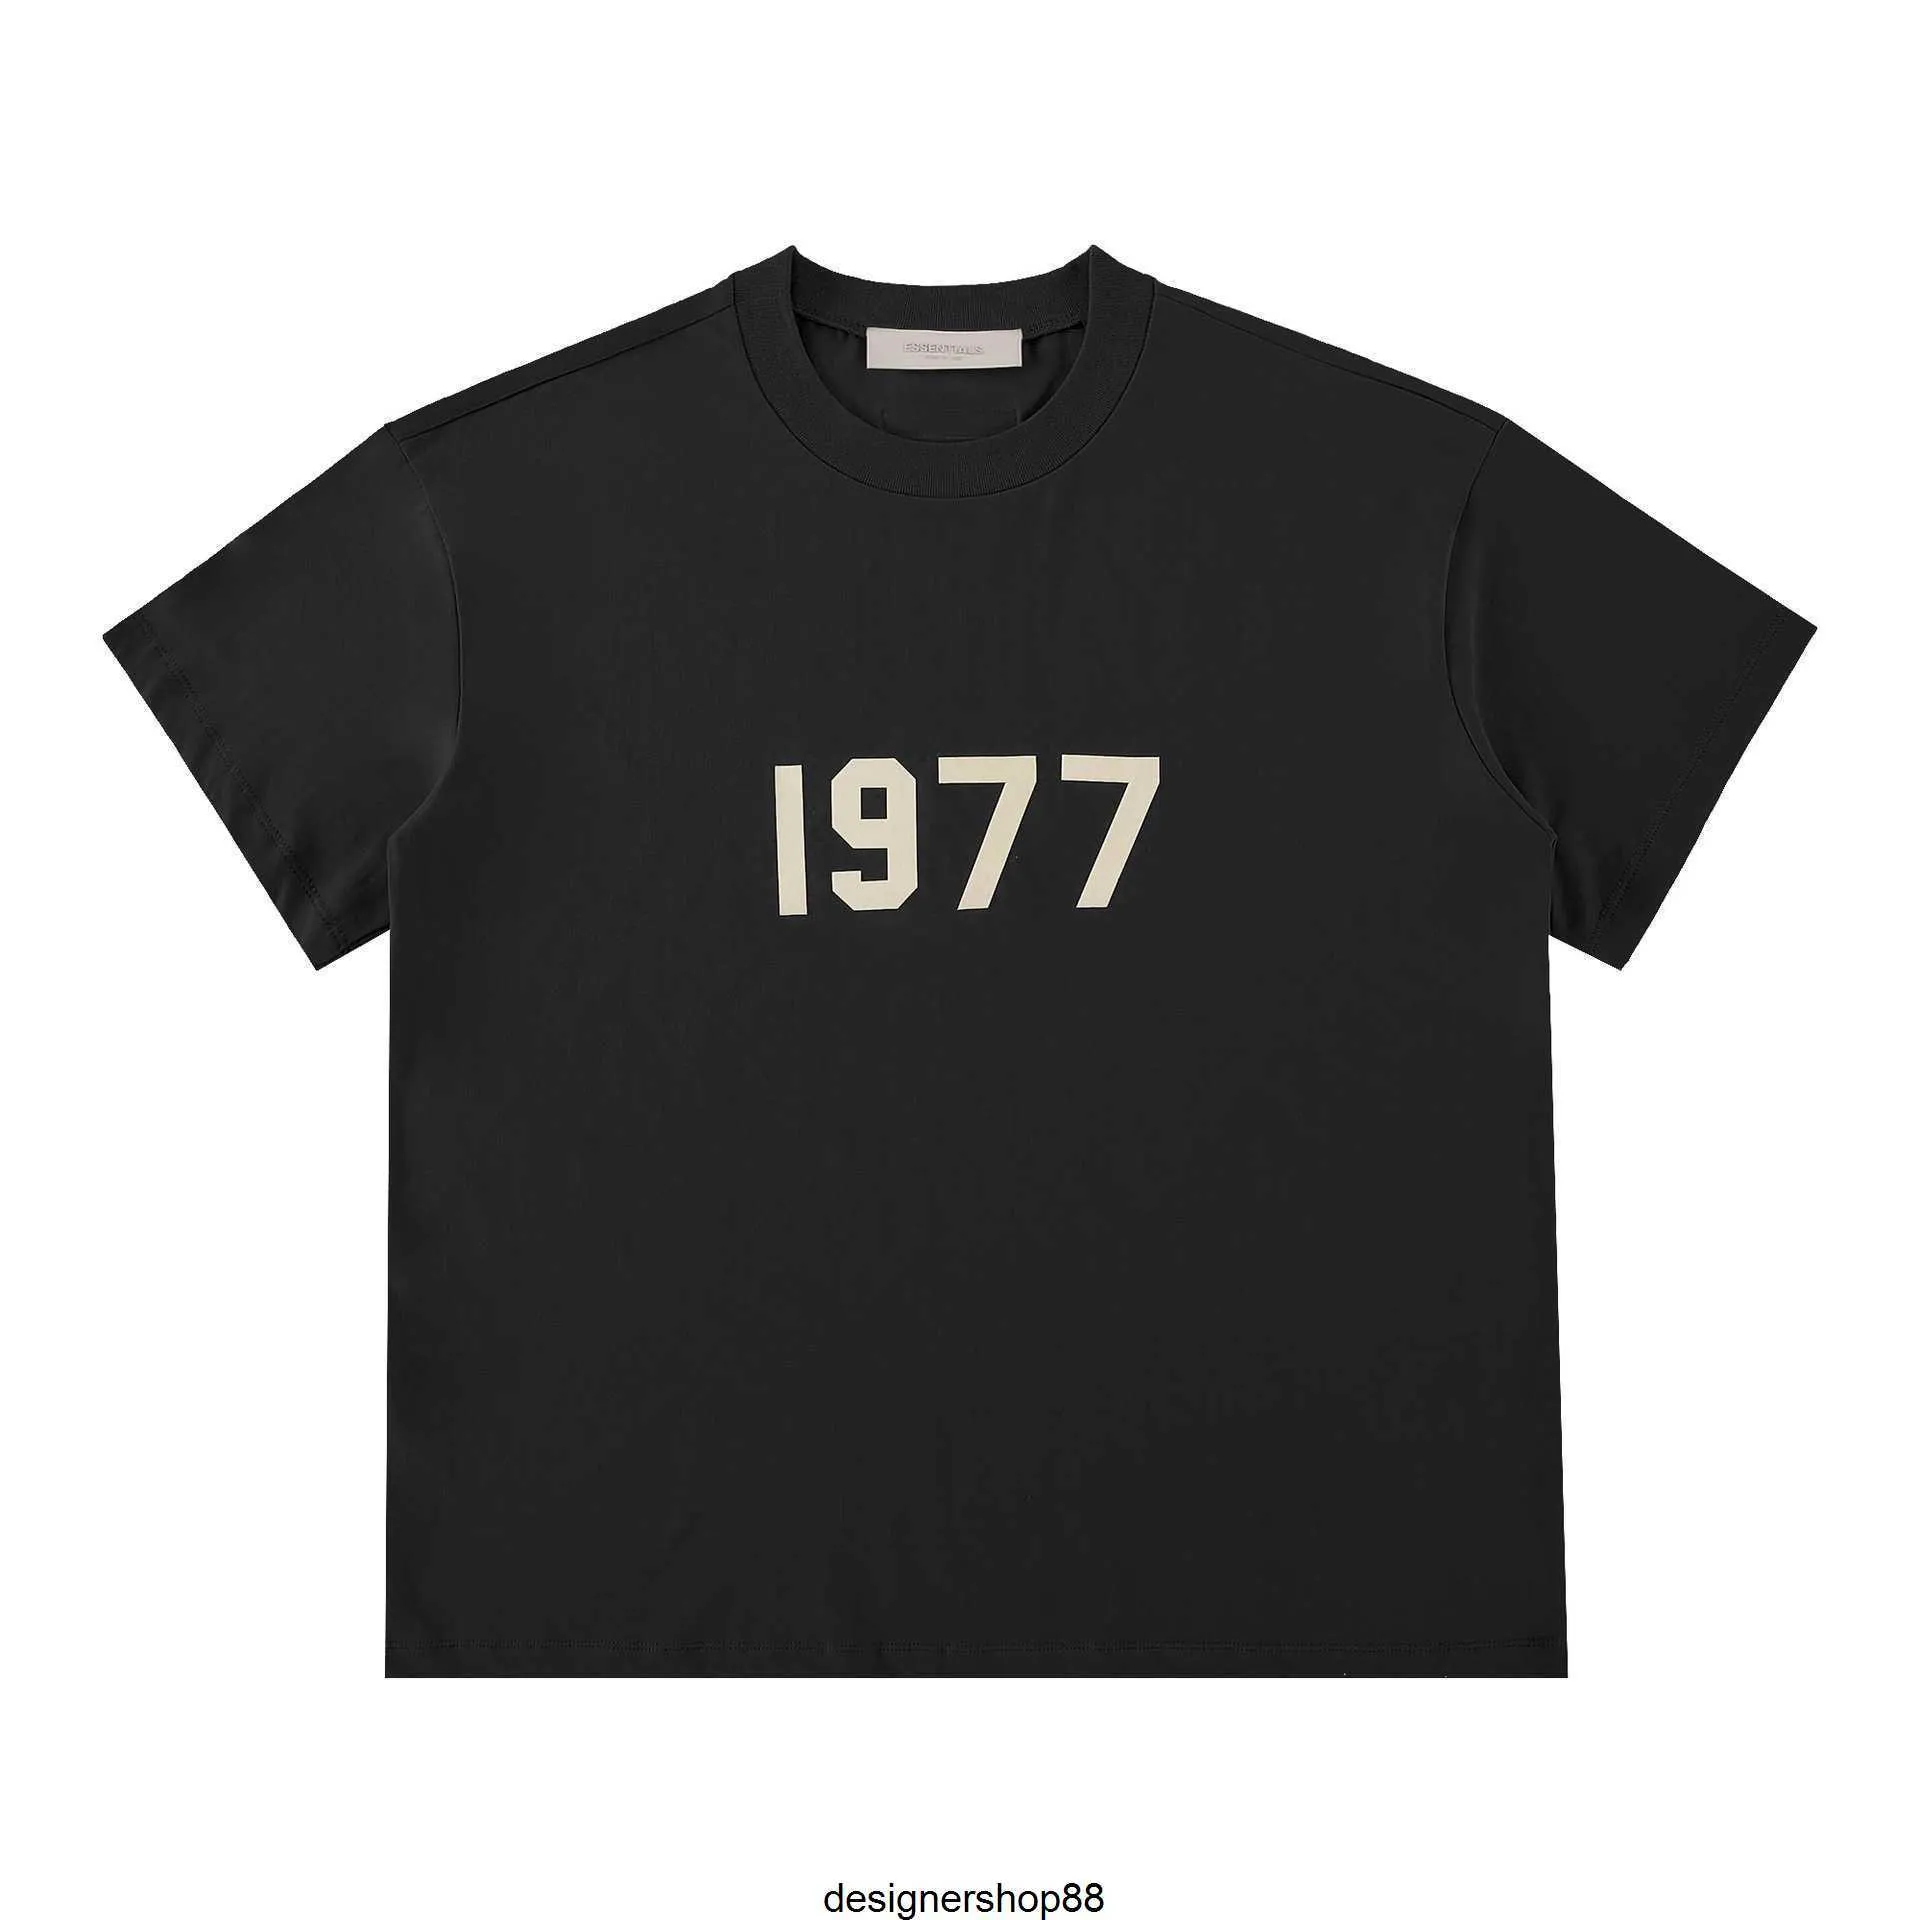 Migliore qualità Street Style Double Line Ess Marchio di alta moda americano 1977 Coppia T-shirt versatile a maniche corte allentata per uomo